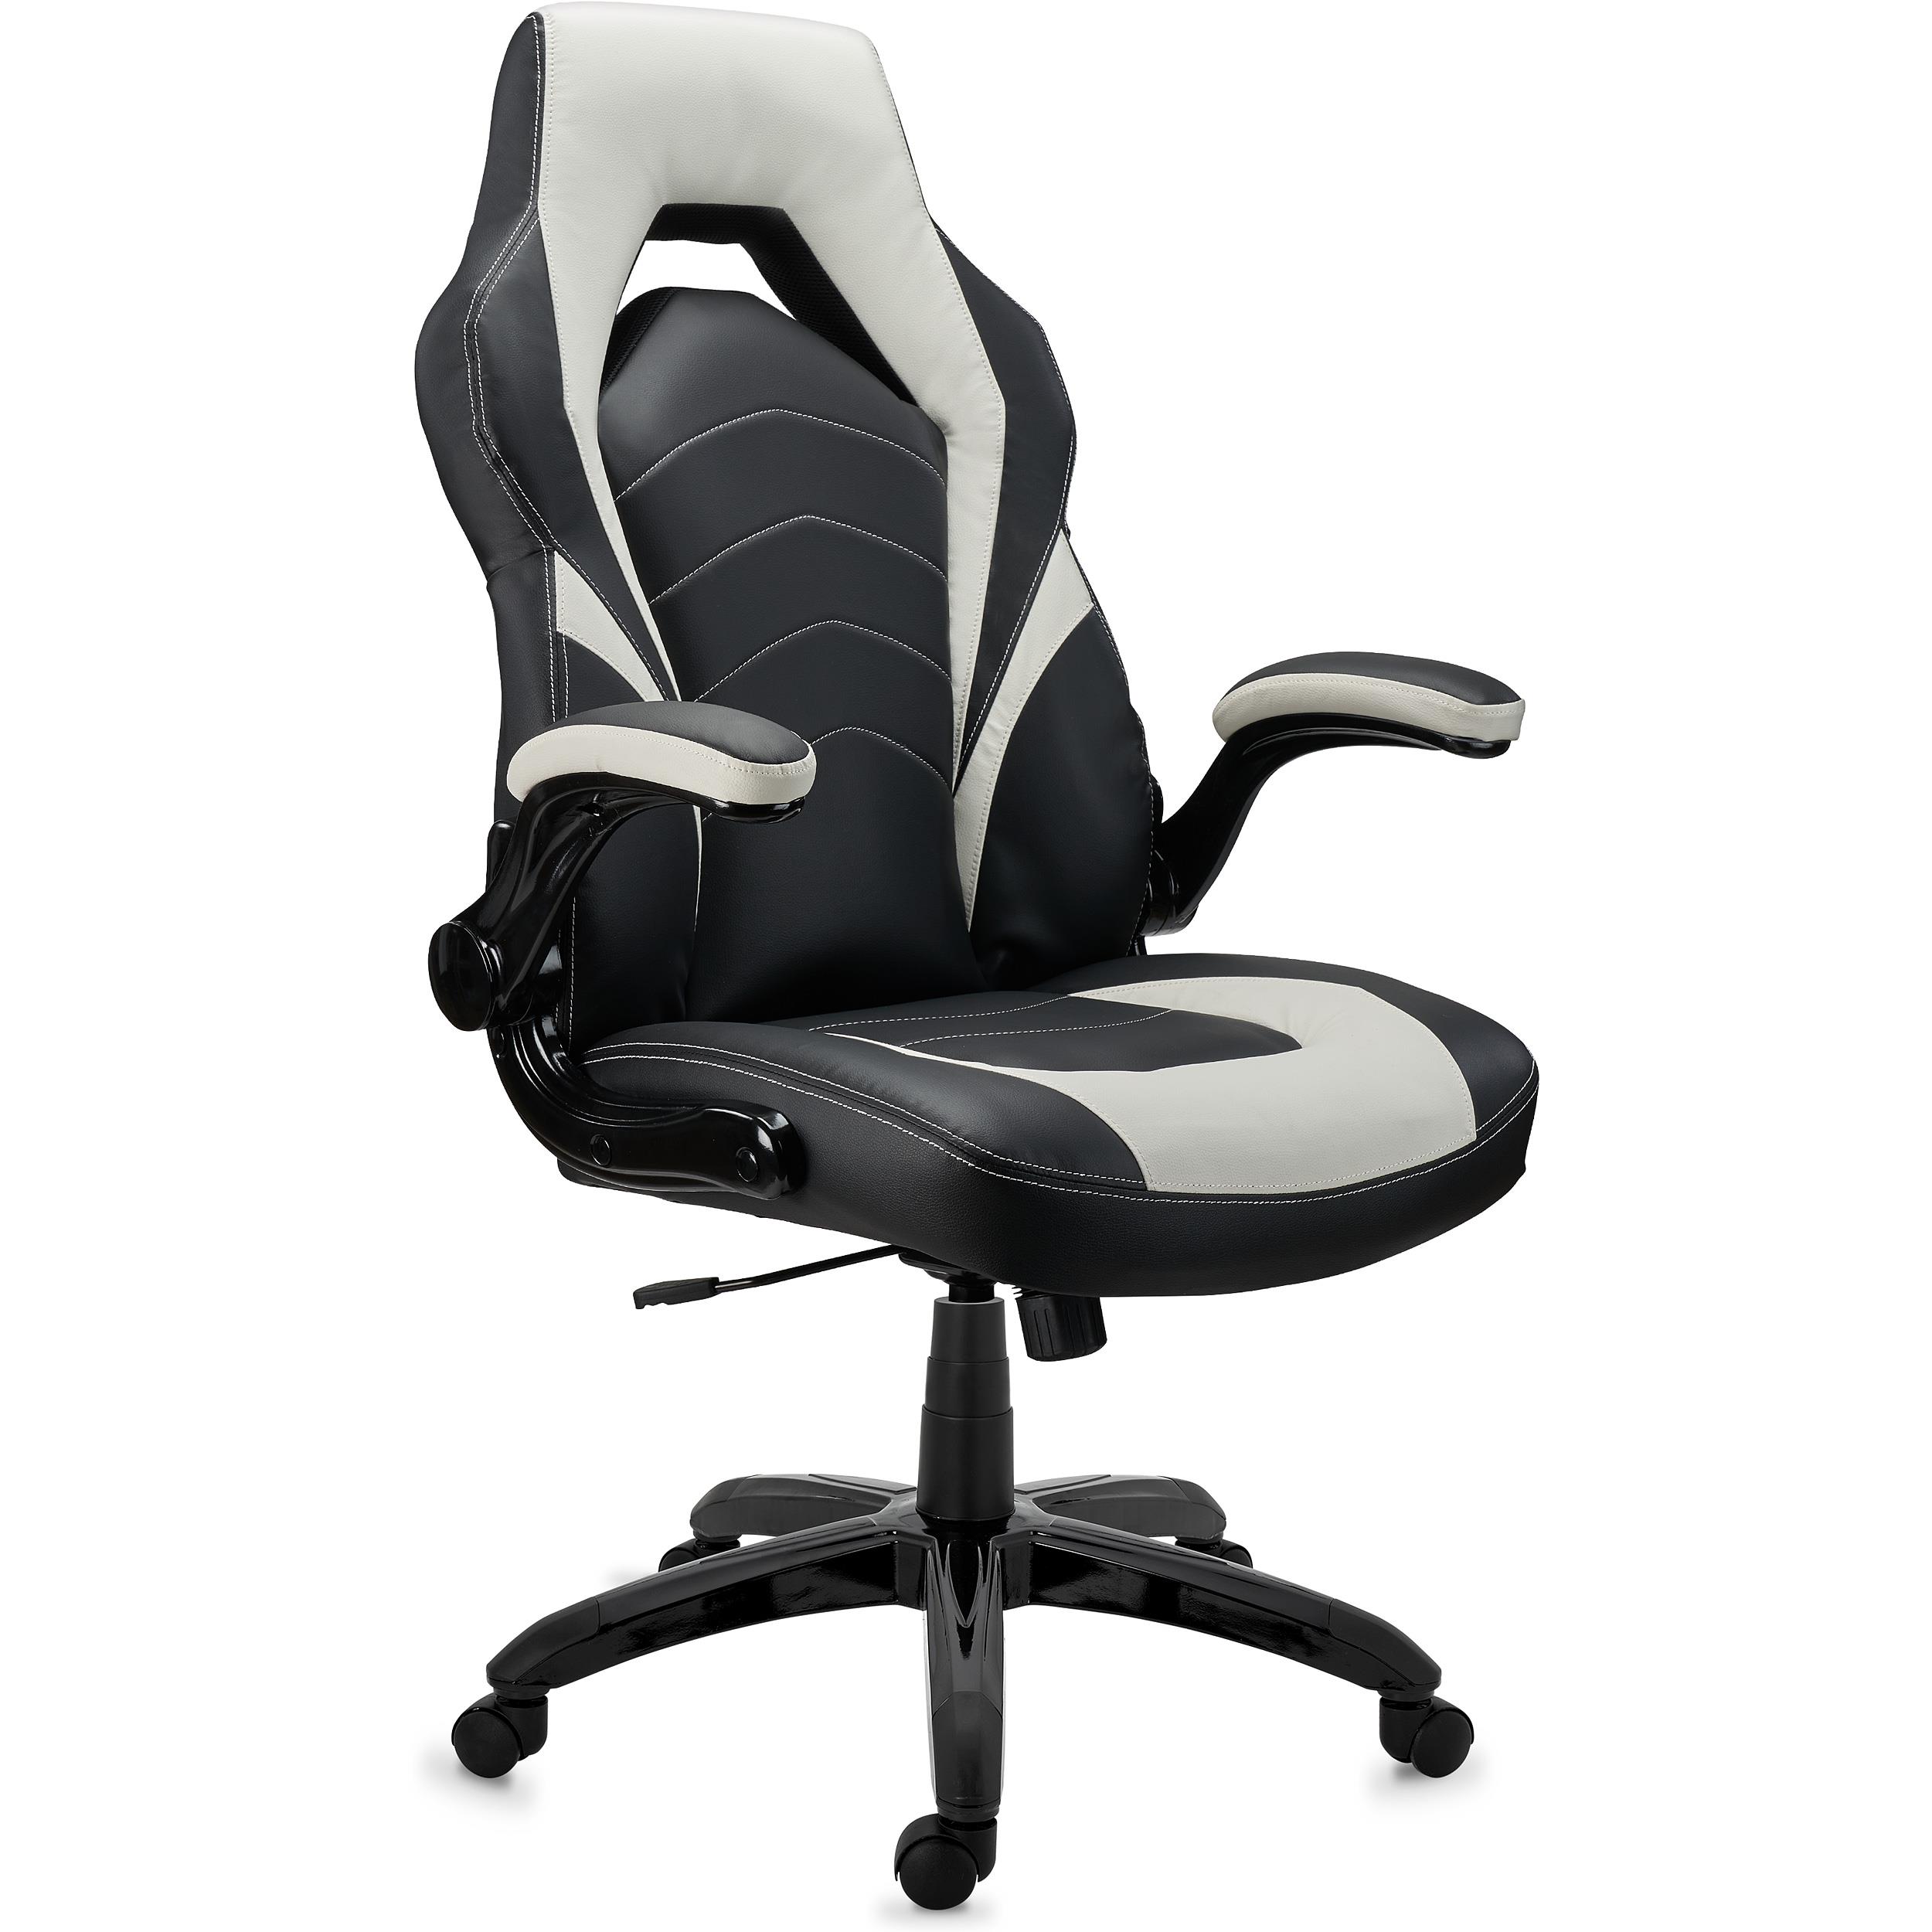 Gaming-Stuhl NITRO, dicke Polsterung, klappbare Armlehnen, Lederbezug, Farbe Schwarz / Weiß